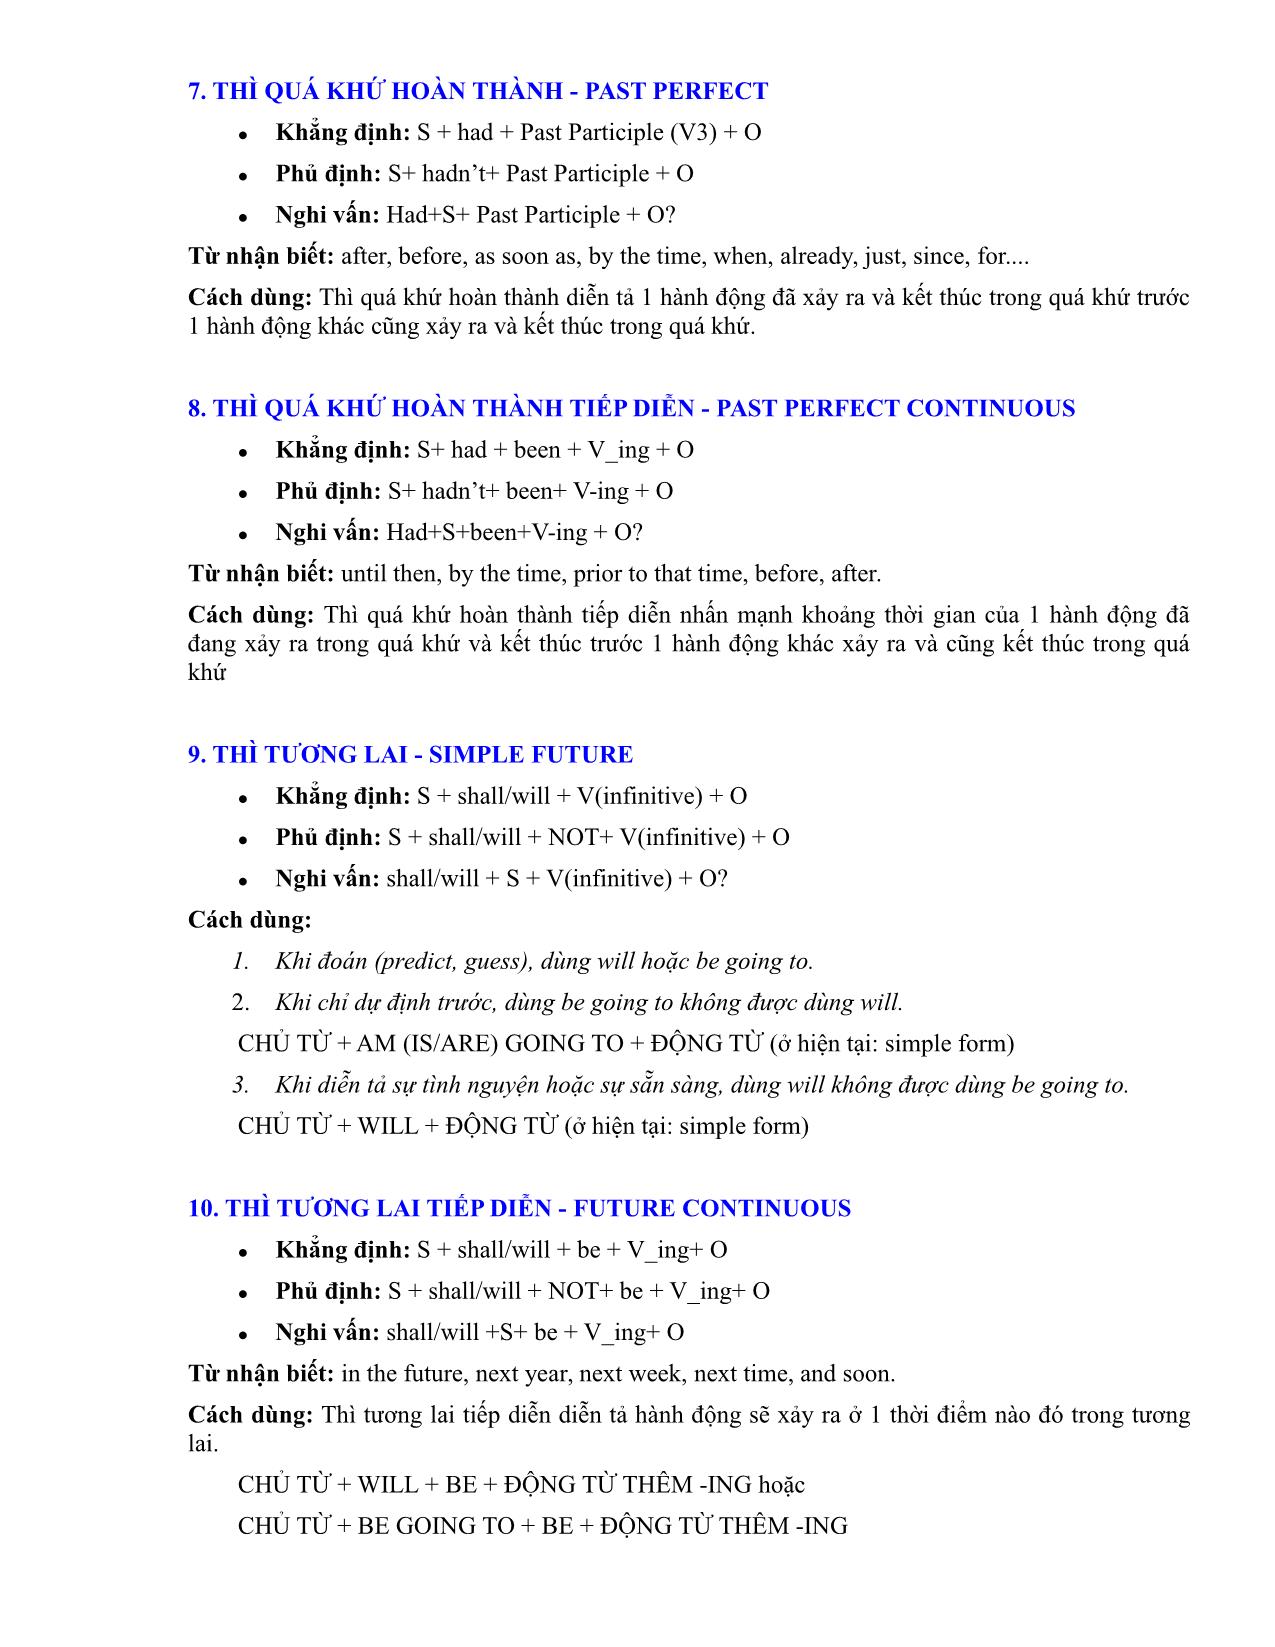 Tổng hợp các thì trong tiếng Anh - Công thức, cách sử dụng, dấu hiệu nhận biết trang 4